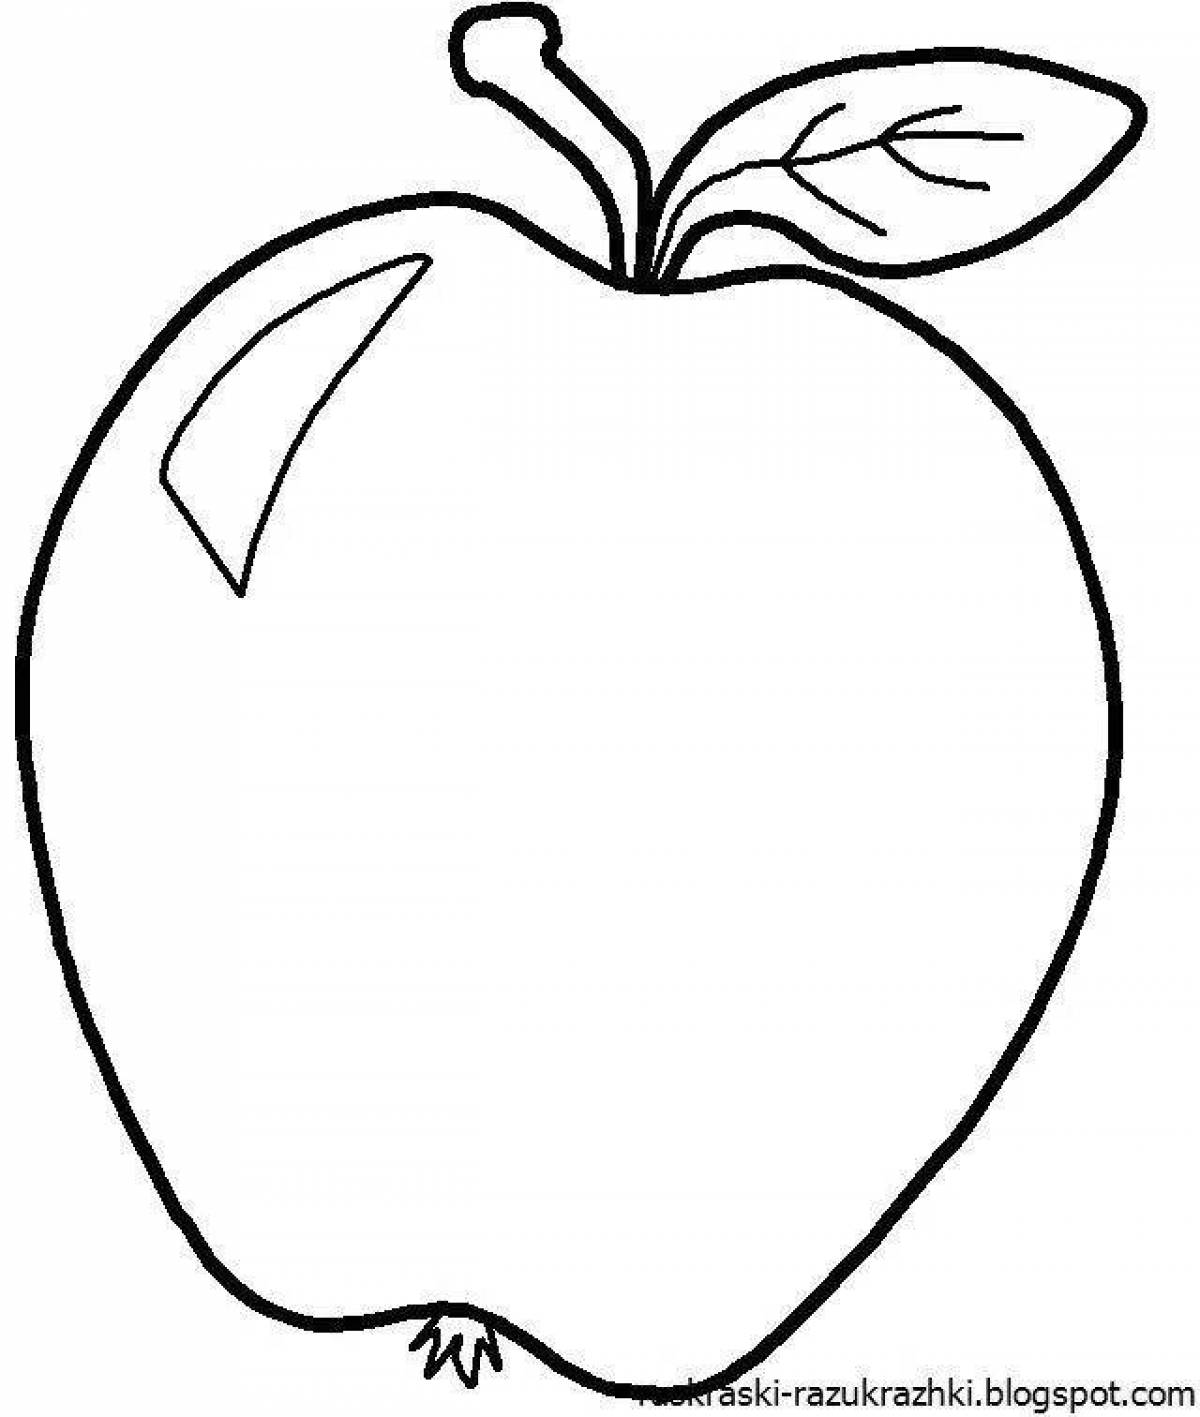 Юмористическая раскраска яблочко